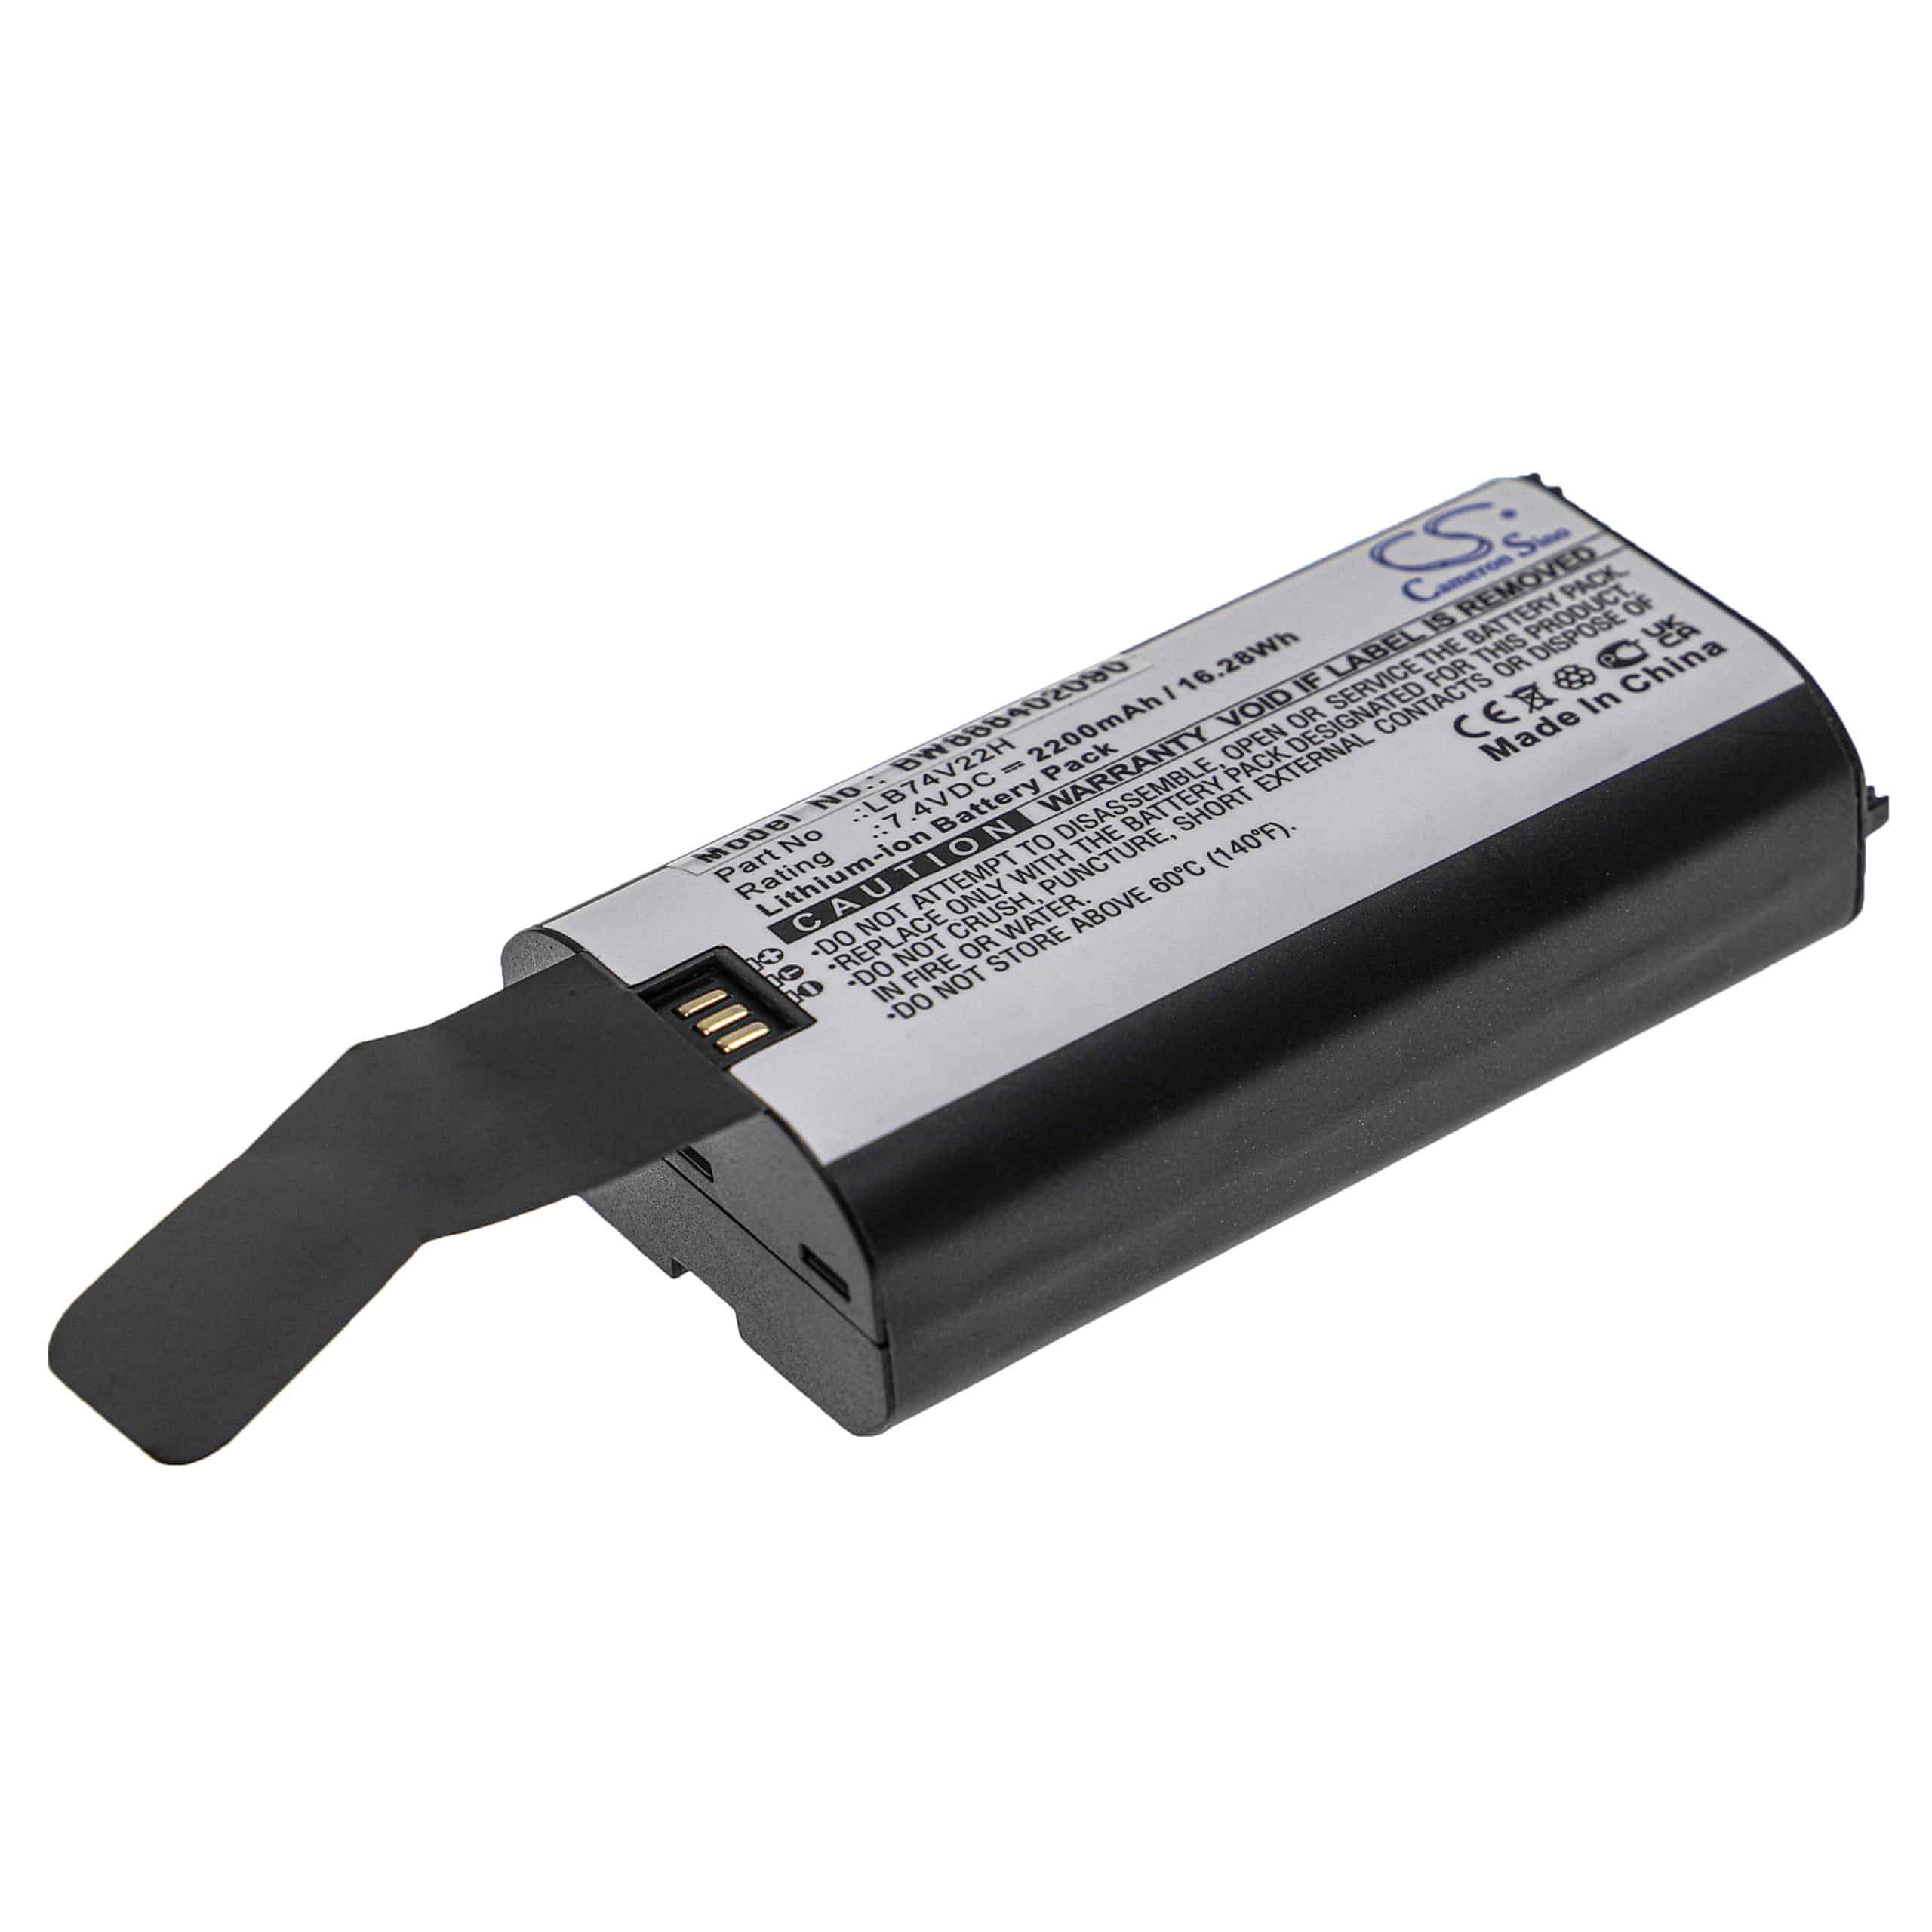 Batterie remplace Newland LB74V22H pour scanner de code-barre - 2200mAh 7,4V Li-ion